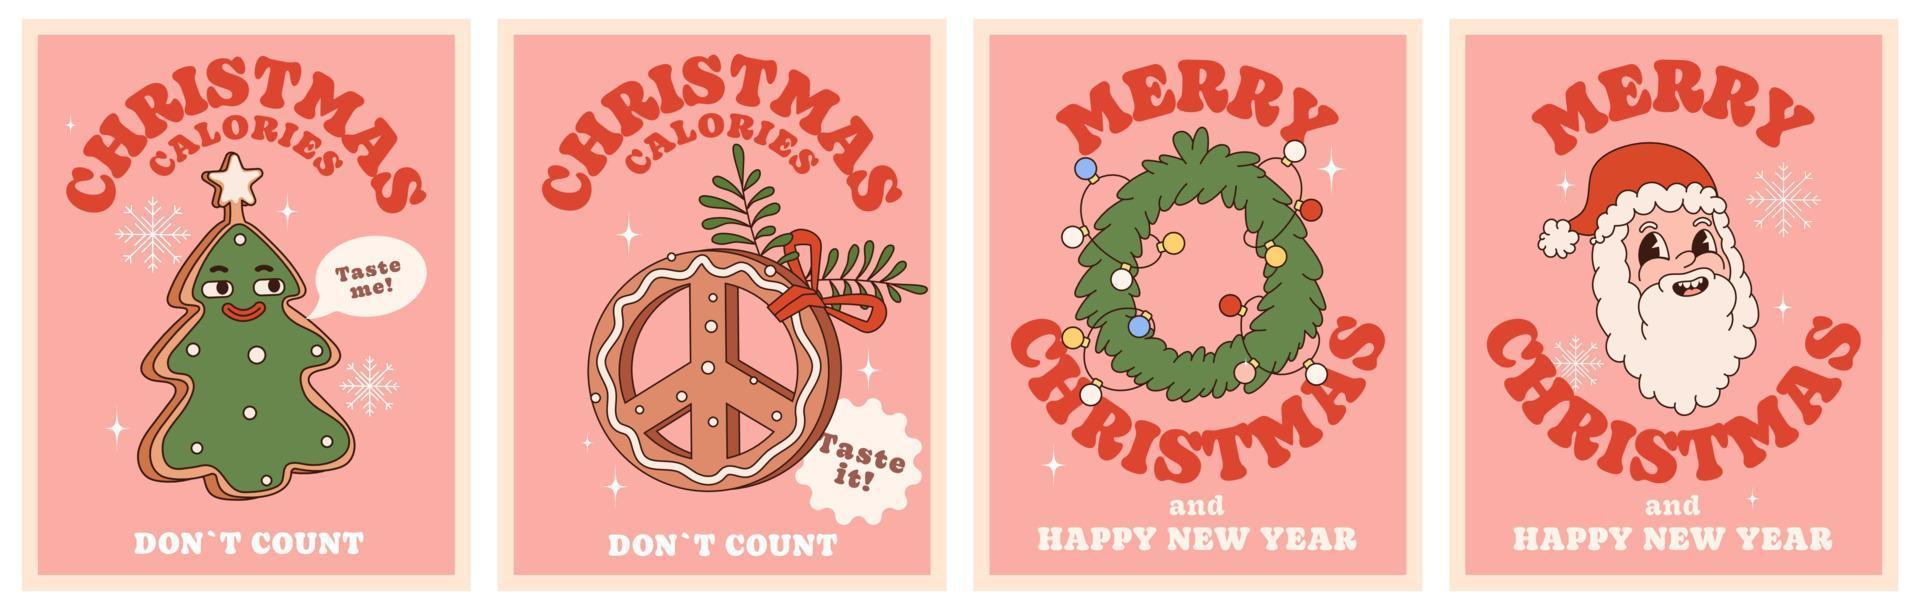 jul kalorier inte räkna. glad jul och Lycklig ny år. häftig hippie affisch uppsättning med pepparkaka småkakor, tomte, gran krans. trenig stil med en 70s vibrafon. vektor